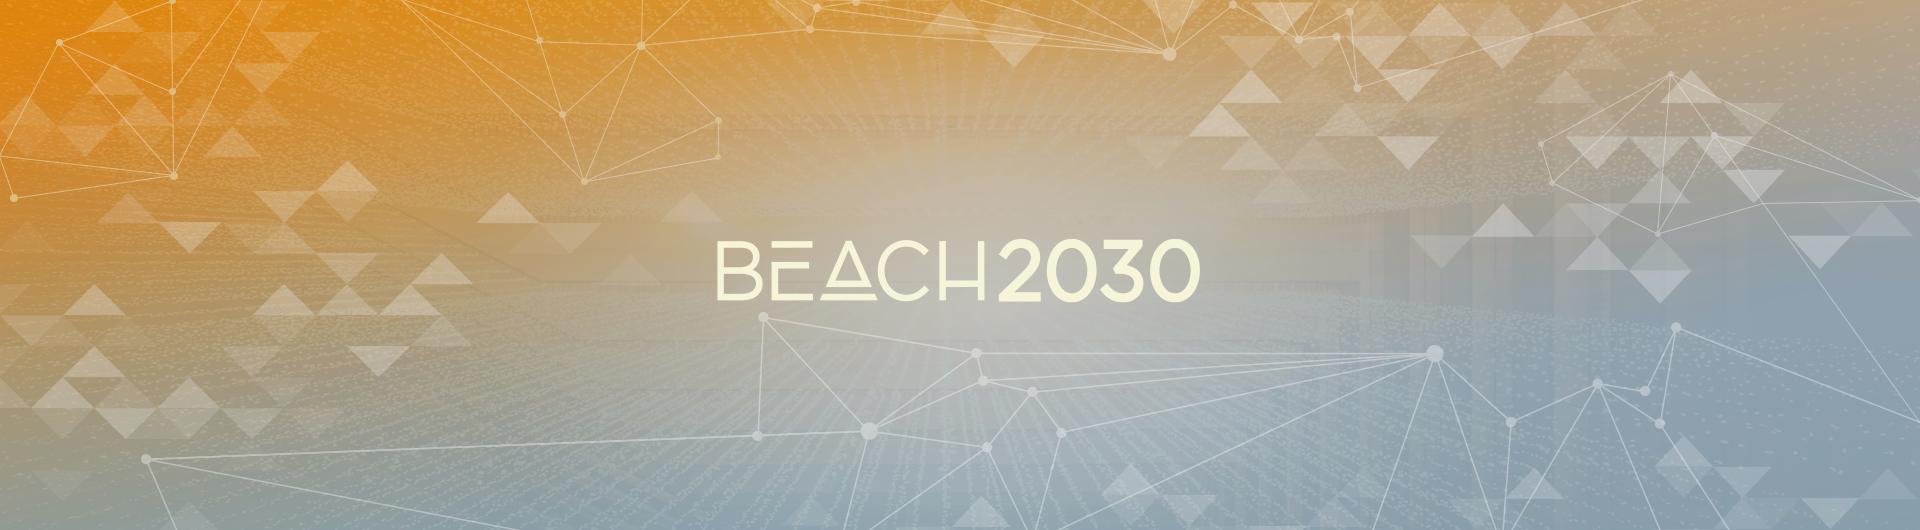 Beach 2030